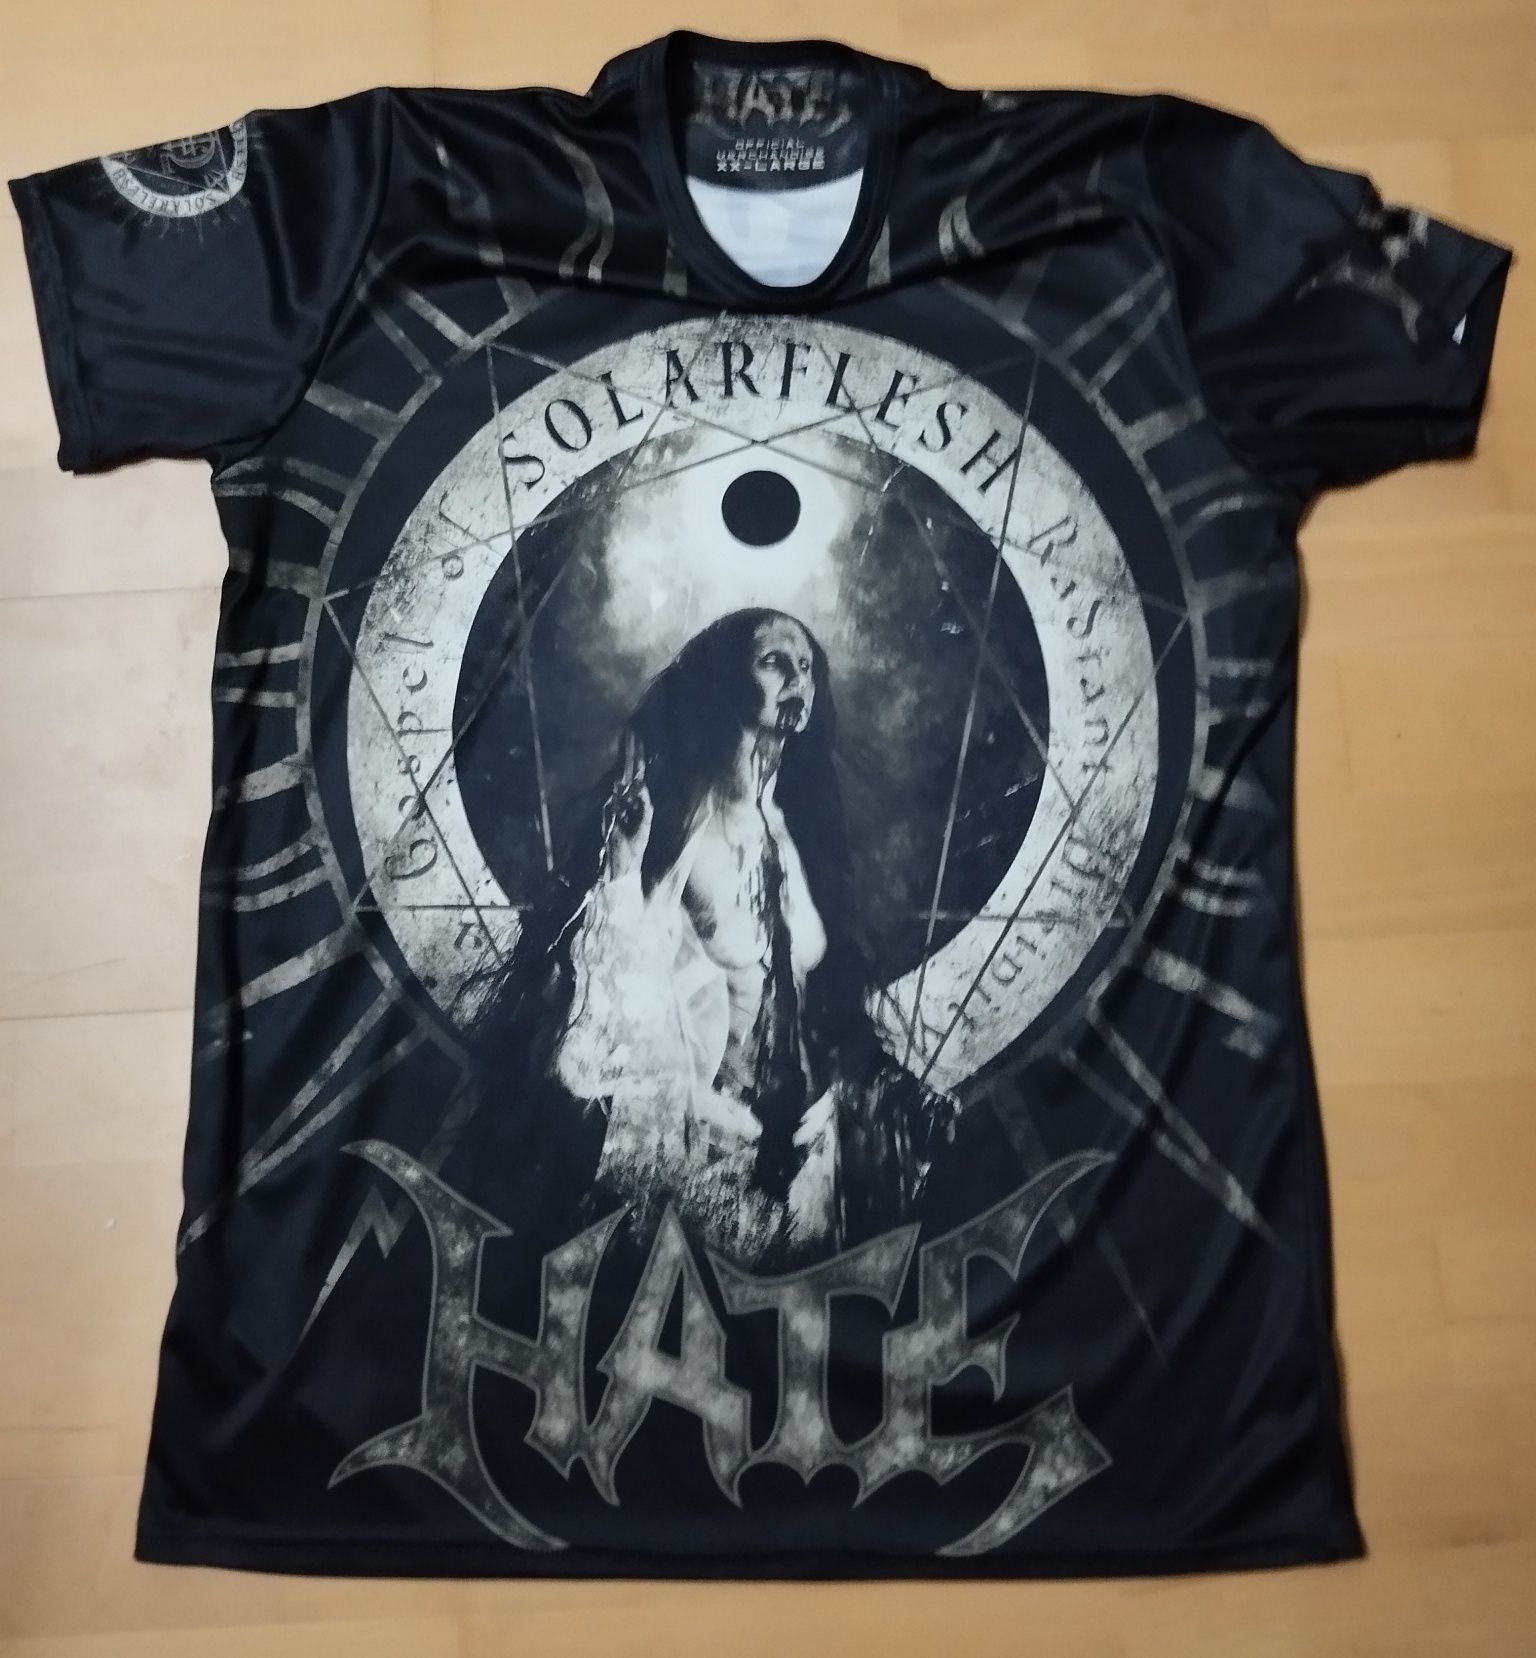 Hate Koszulka Death Metal